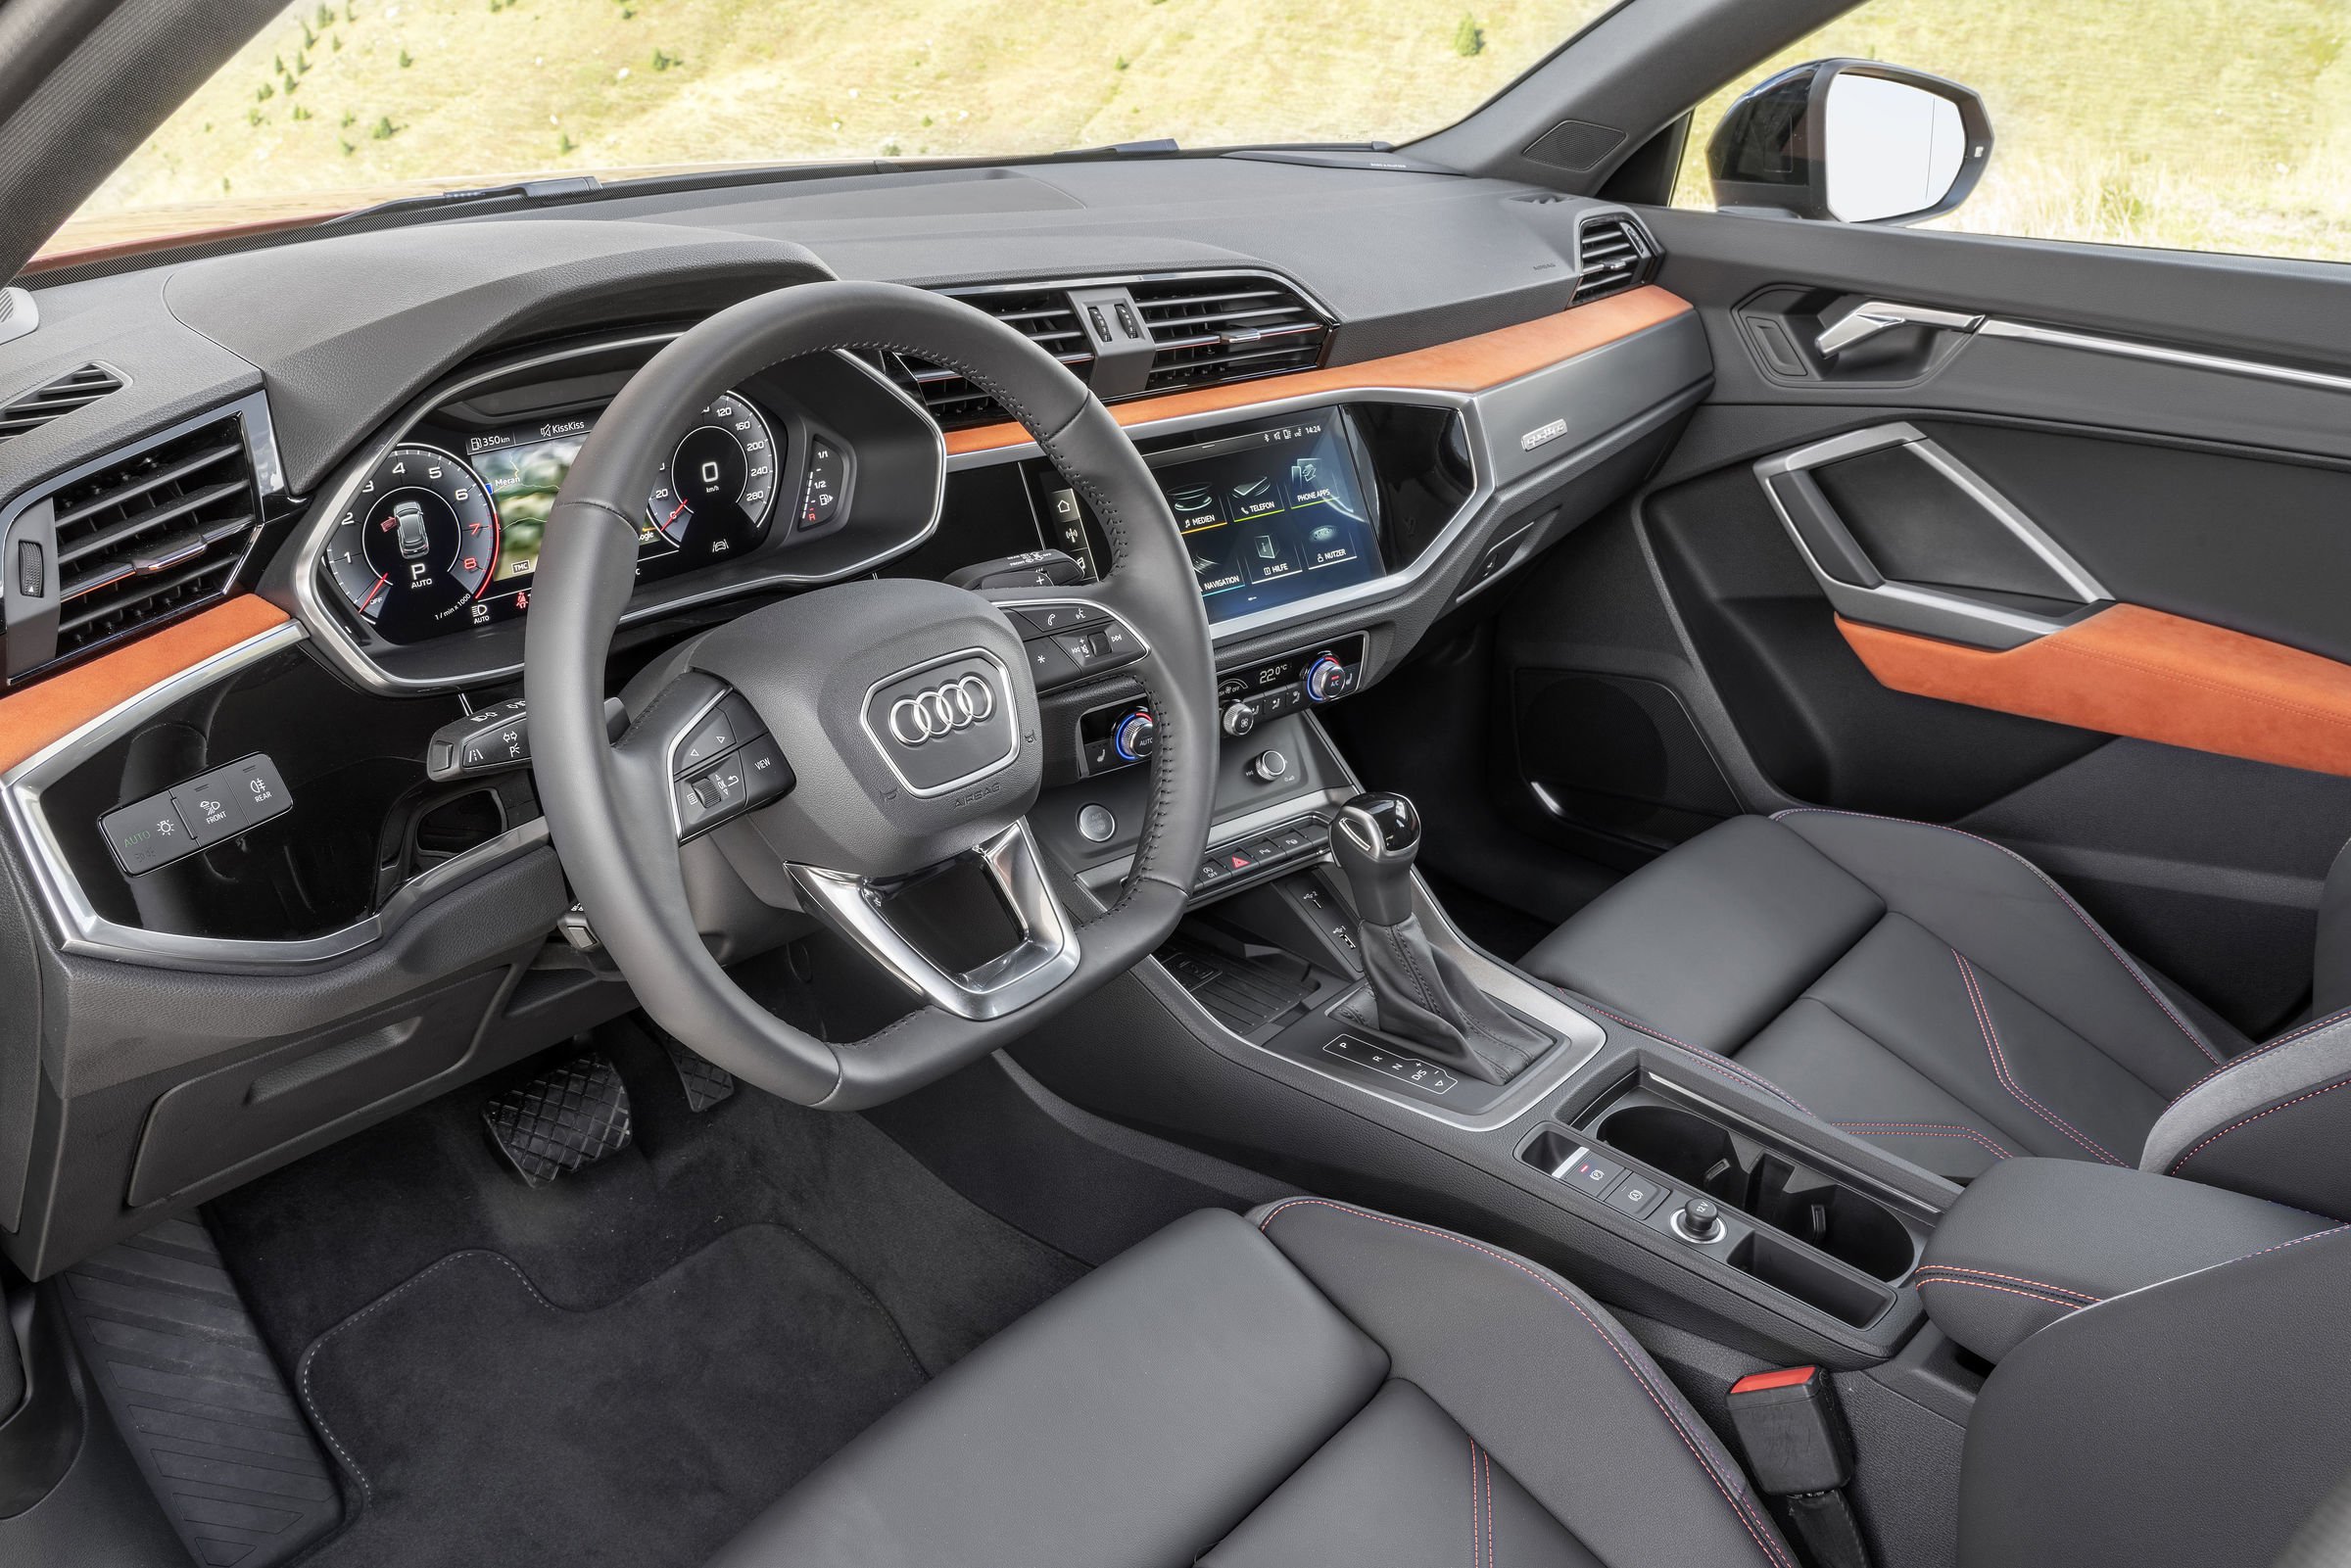 Audi Q3 interior - Cockpit